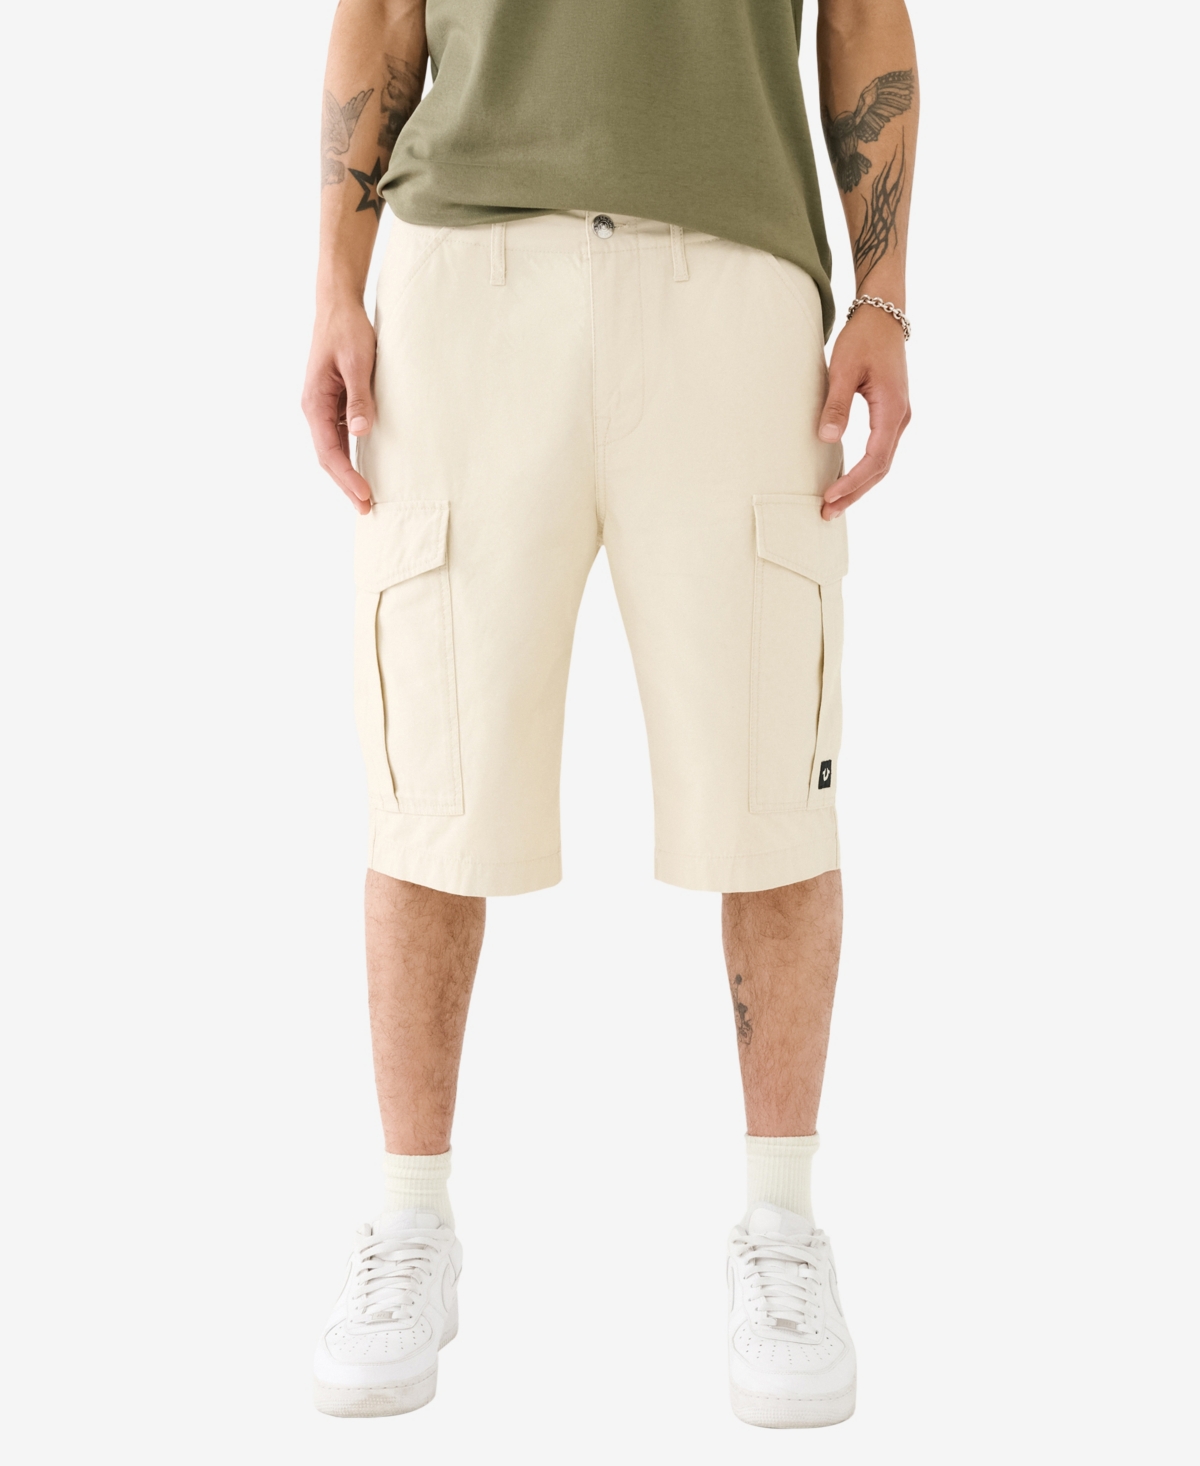 Men's Classic Cargo Shorts- 12" Inseam - White